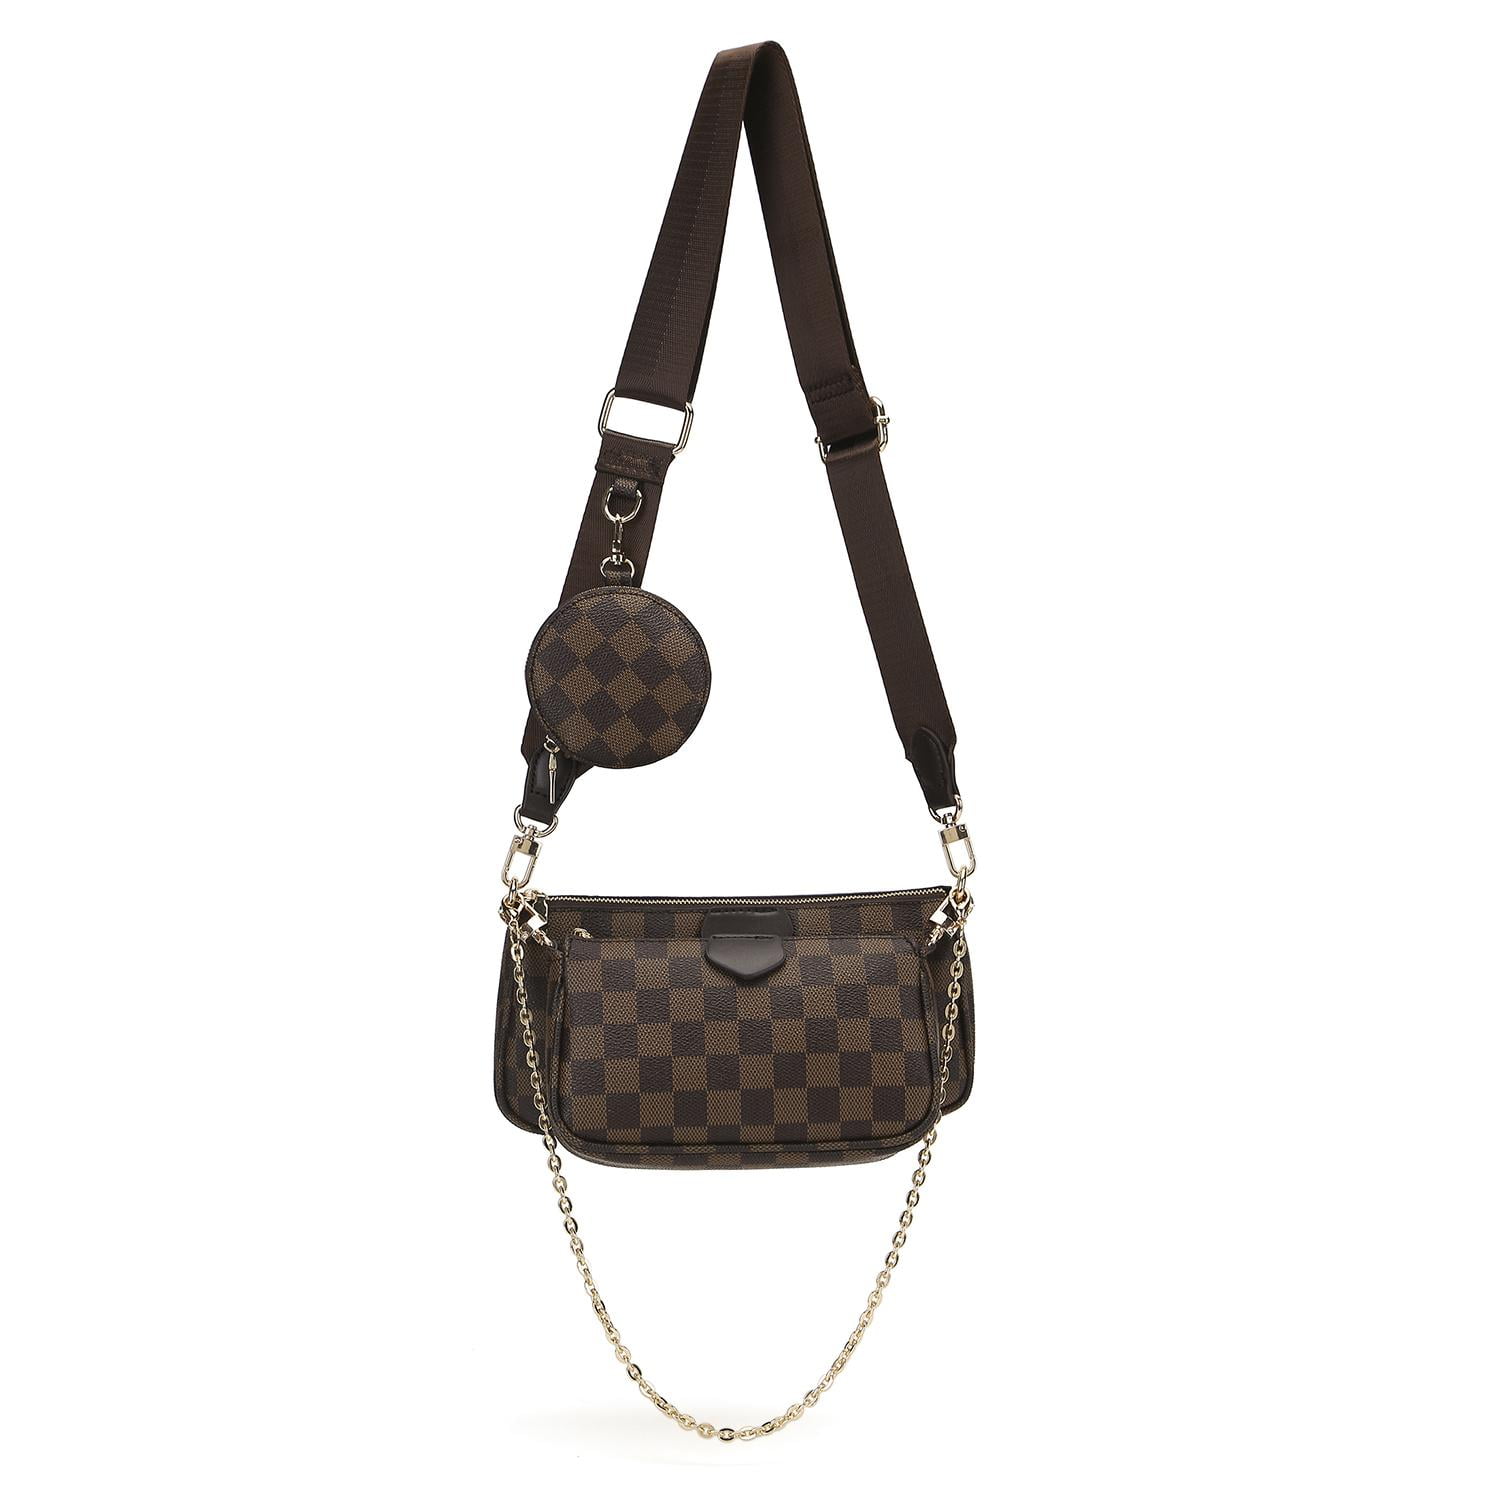 LV Multi Pochette Accessoires Bag Review & DIY Louis Vuitton Dupe